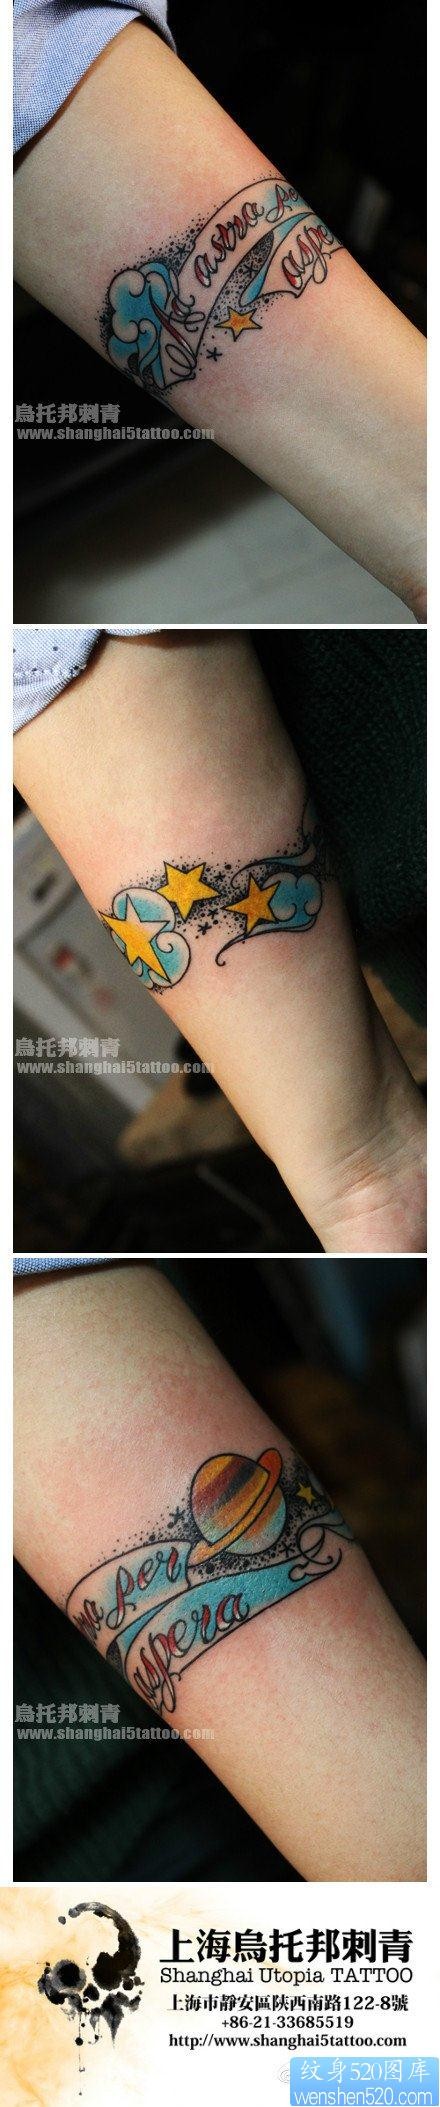 女人手臂流行精美的字母与星星月亮纹身图片